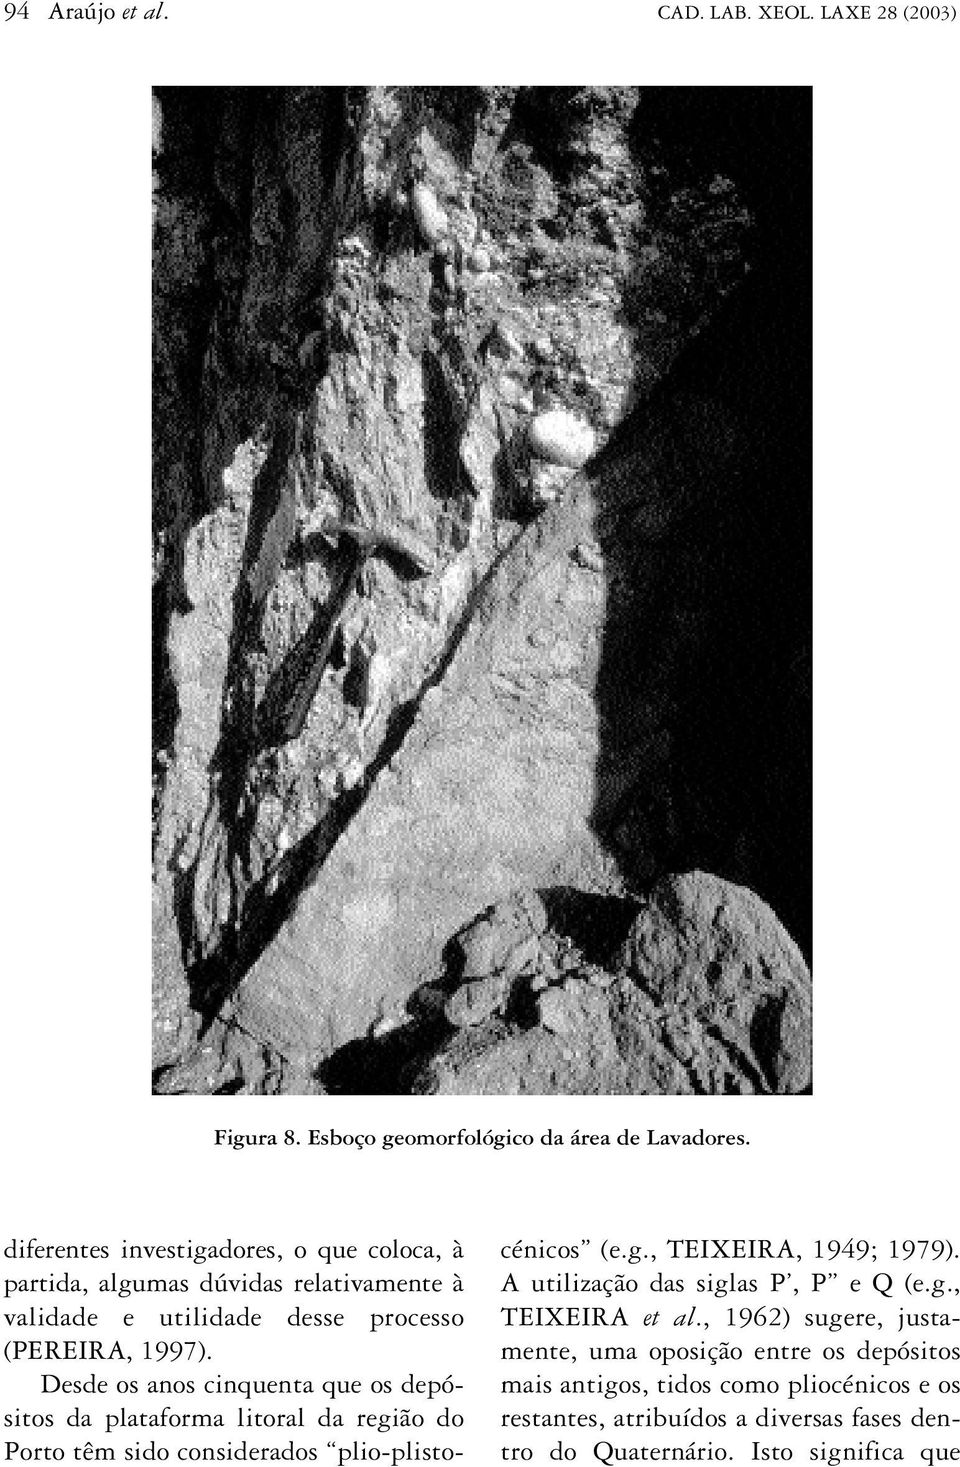 Desde os anos cinquenta que os depósitos da plataforma litoral da região do Porto têm sido considerados plio-plistocénicos (e.g., TEIXEIRA, 1949; 1979).